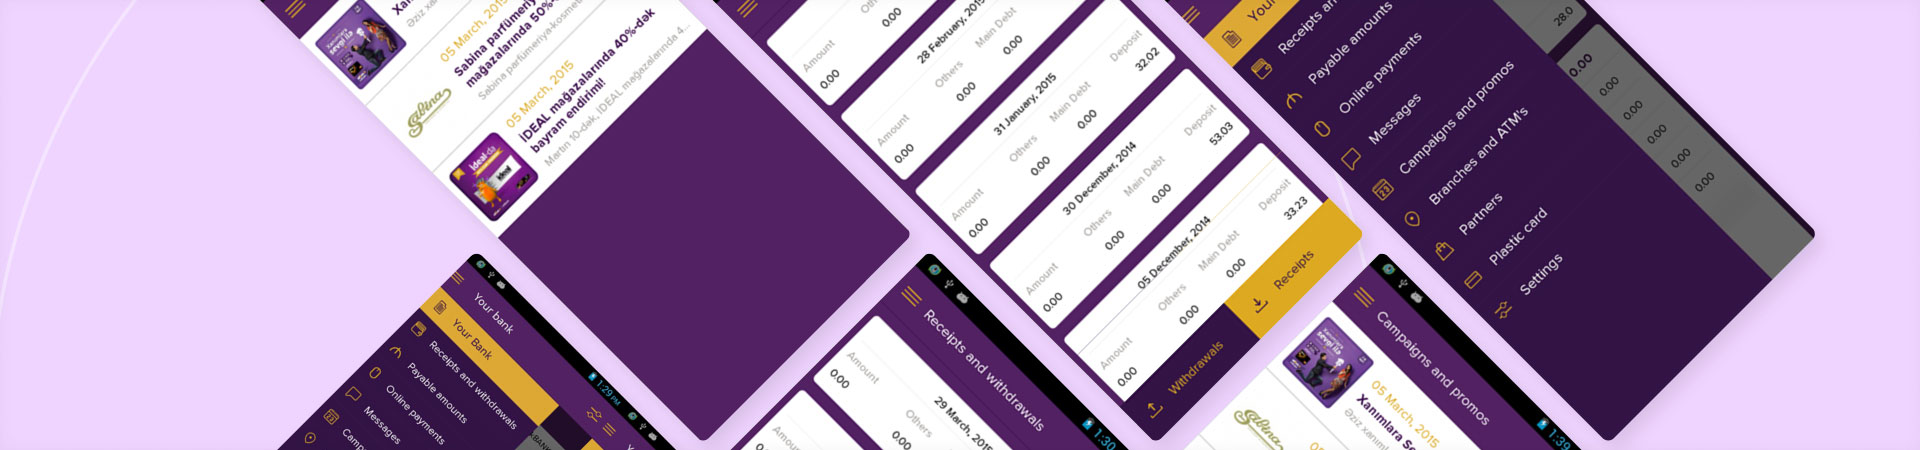 Entwicklung einer mobilen Banking-App für Teilzahlungsgeschäfte